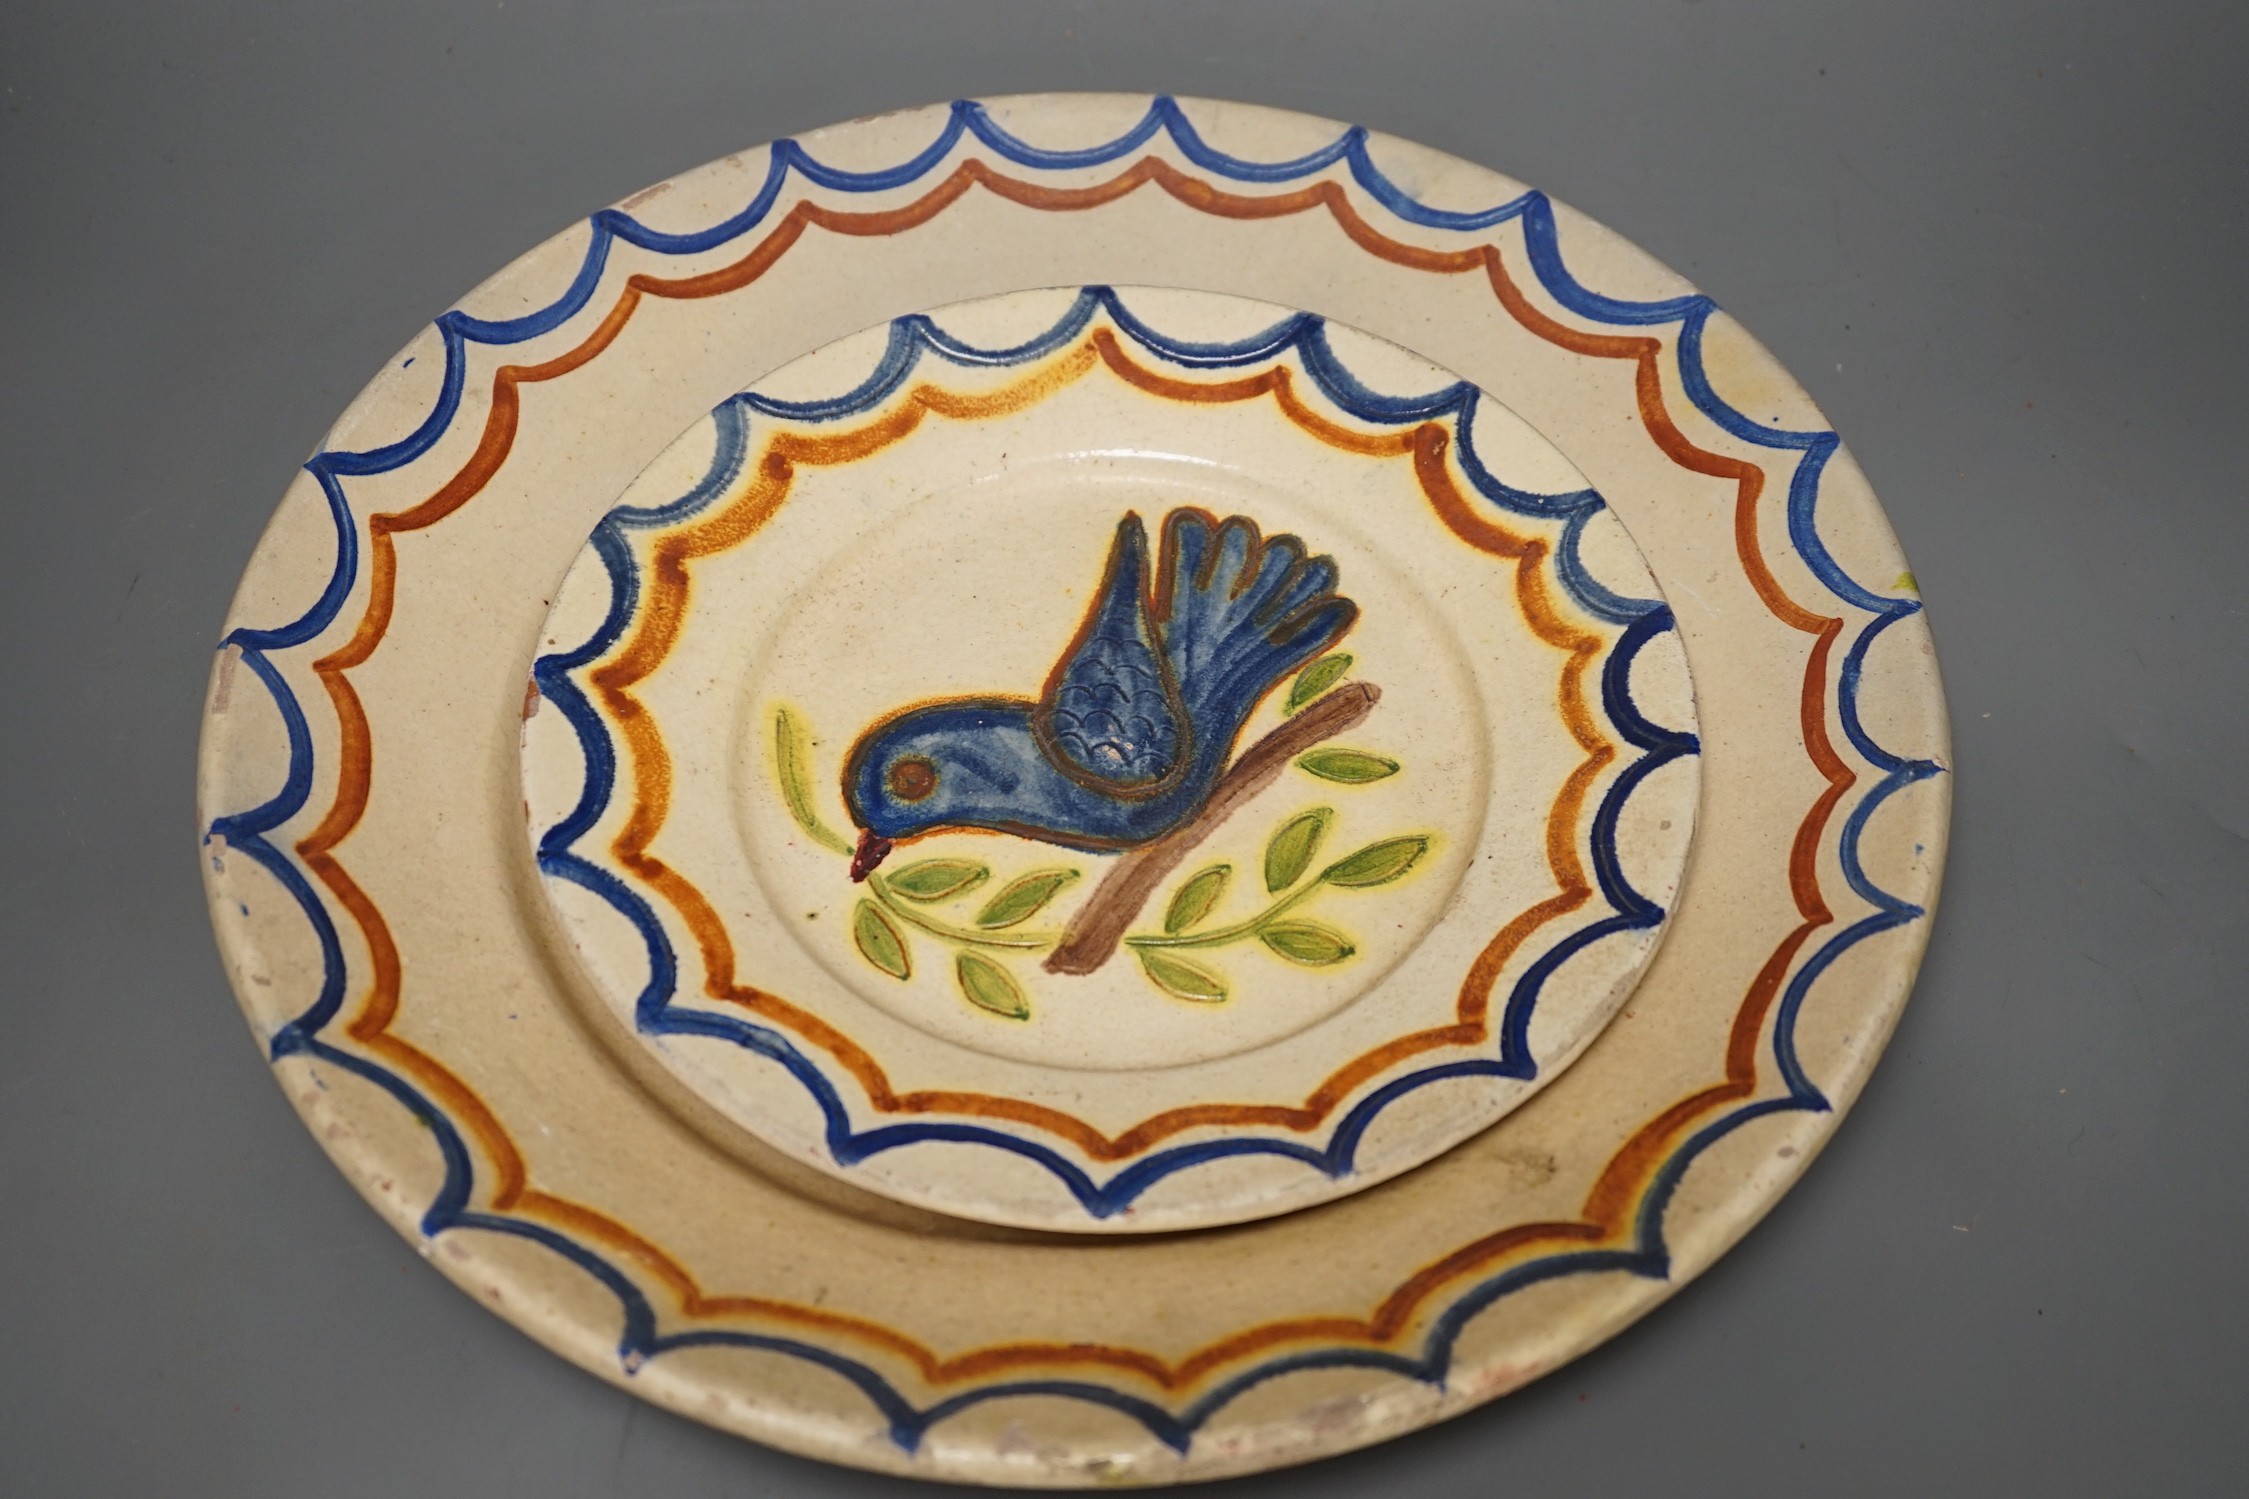 Five Portuguese provincial pottery plates, largest 35 cms diameter